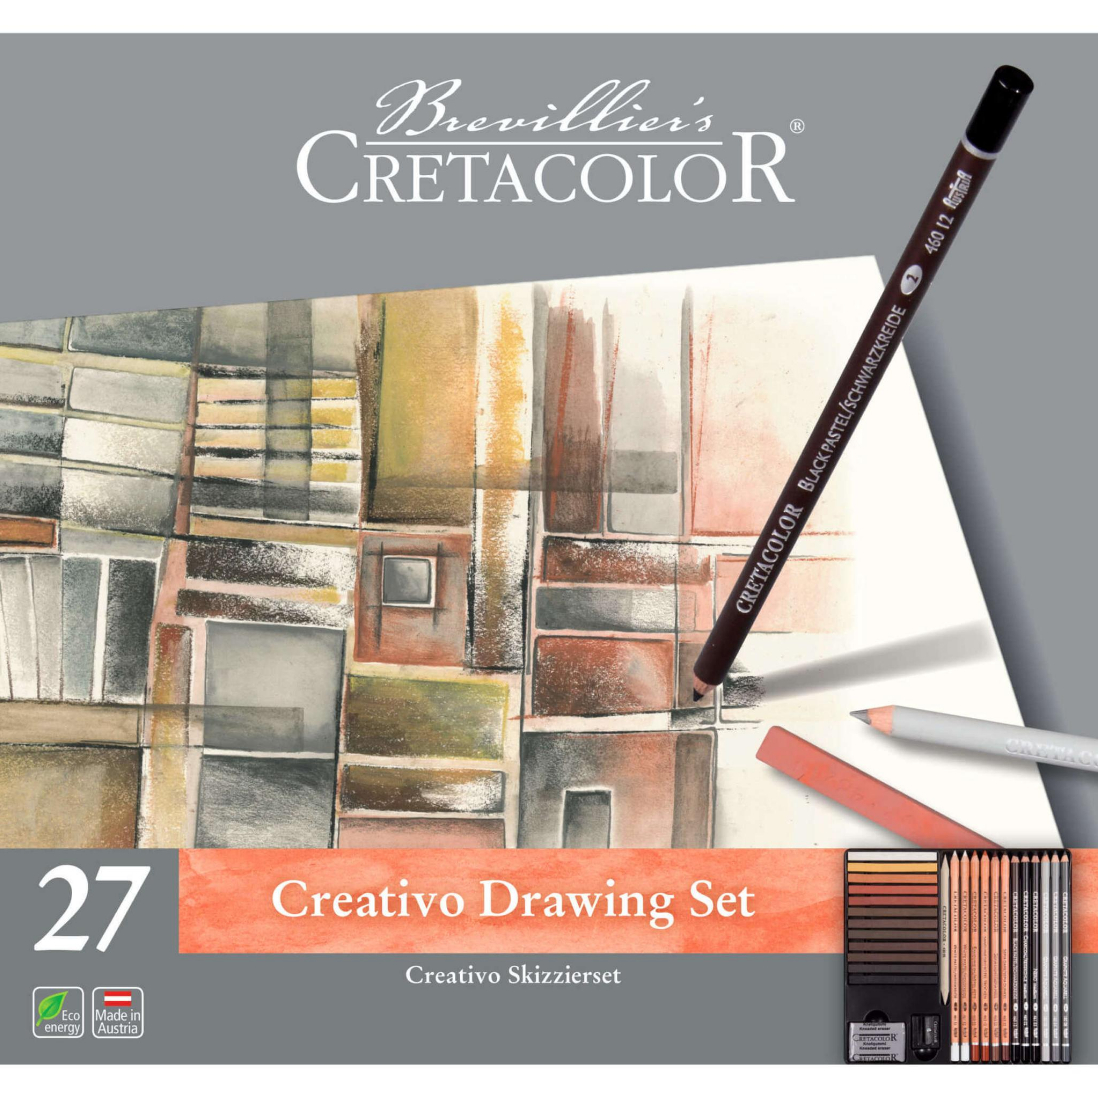 Conjunto desenho Creativo 24 peças da Cretacolor.